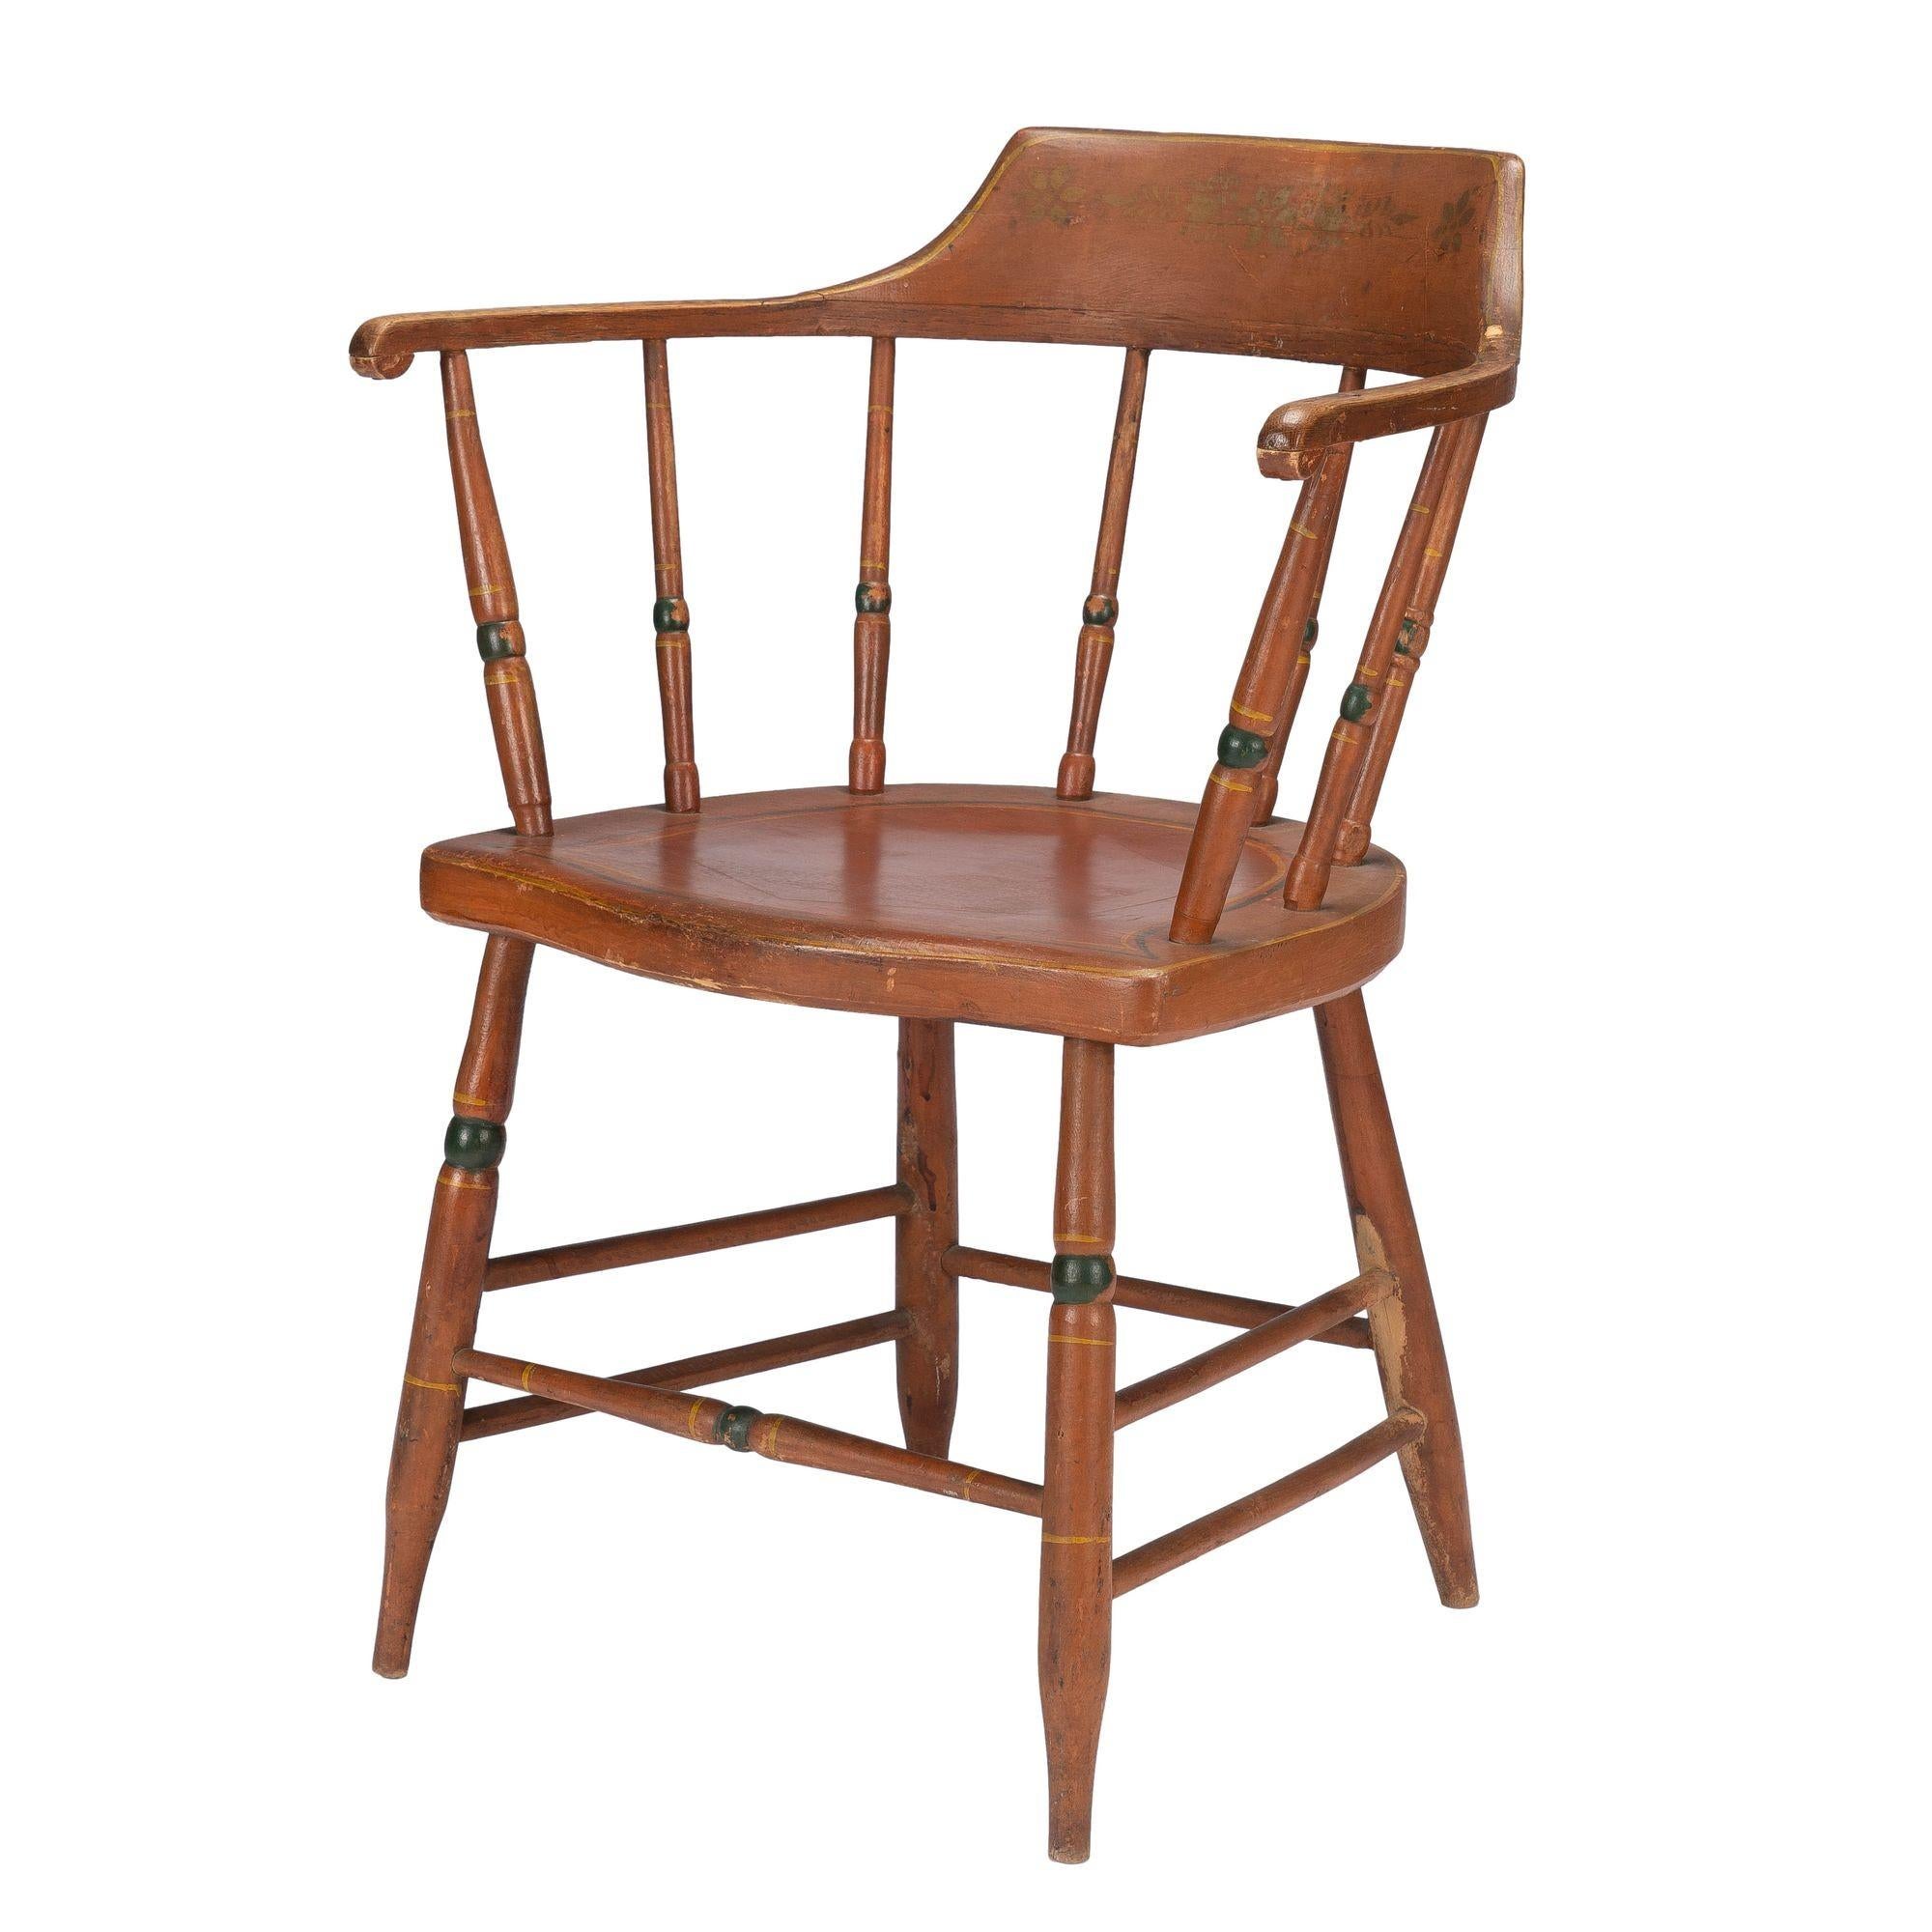 Amerikanischer Sheraton Windsor-Stuhl in originaler oxidroter Lackierung mit grünen Akzentstreifen. Auf der Oberseite des Sitzes befindet sich ein sechseckiger Einsatz und darunter ein runder Einsatz. Komfortable Größe mit einer schönen